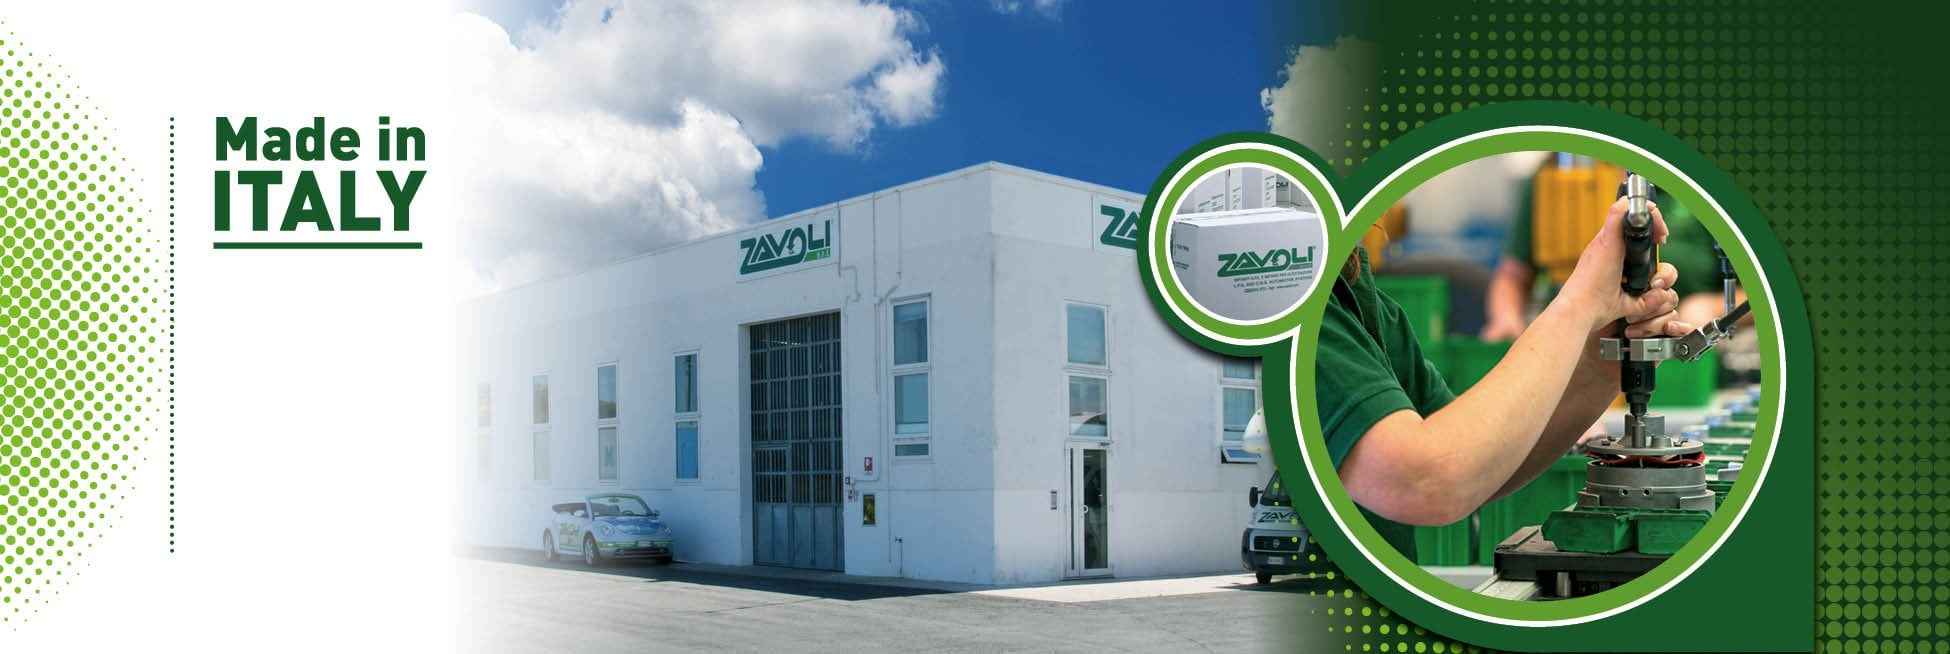 Газобаллонное оборудование Zavoli производится в Италии